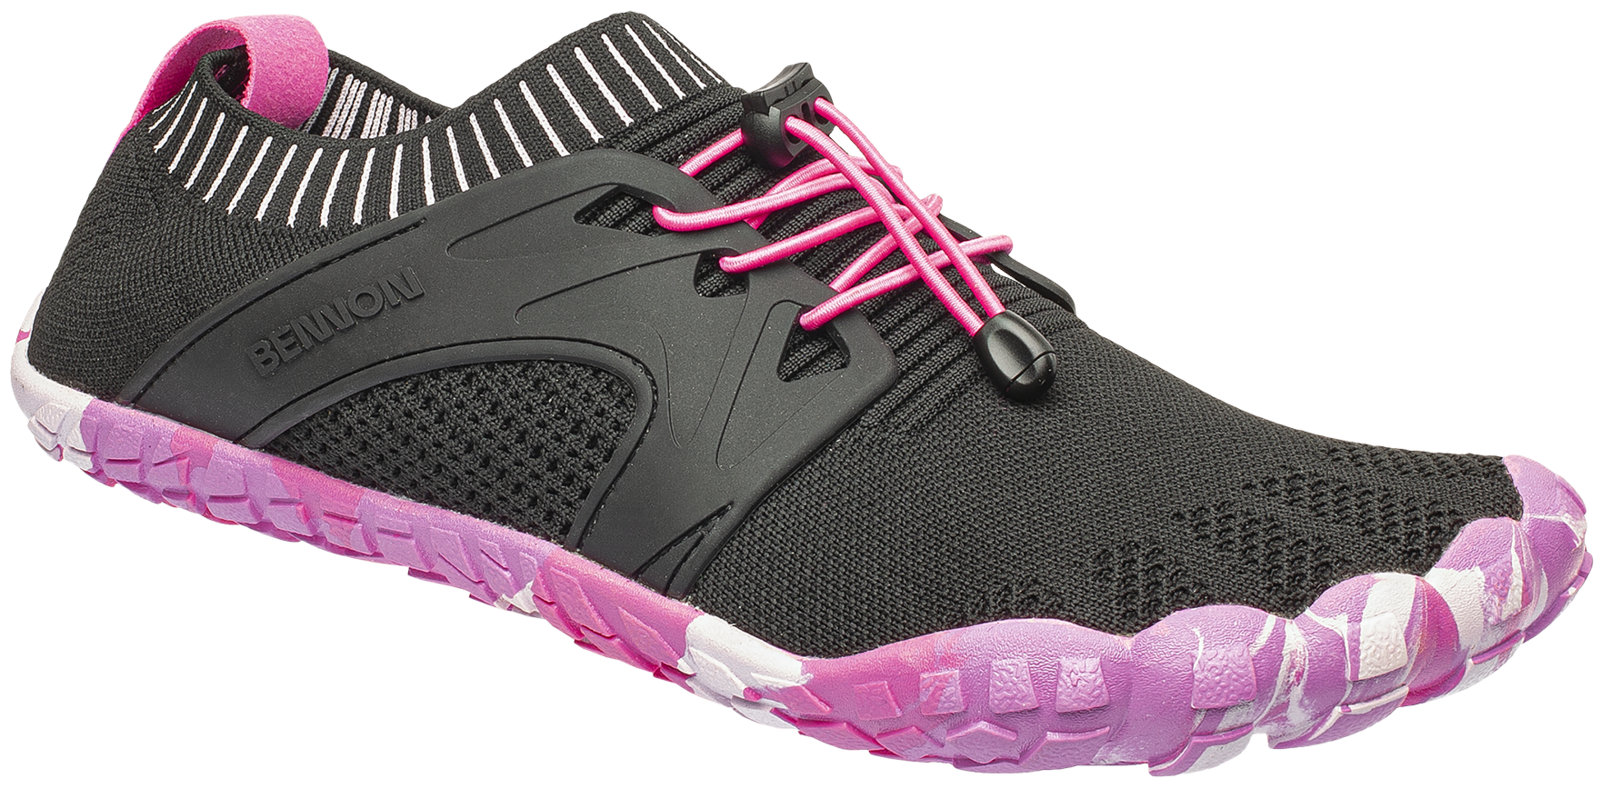 Voľnočasová barefoot obuv Bennon Bosky - veľkosť: 36, farba: čierna/ružová